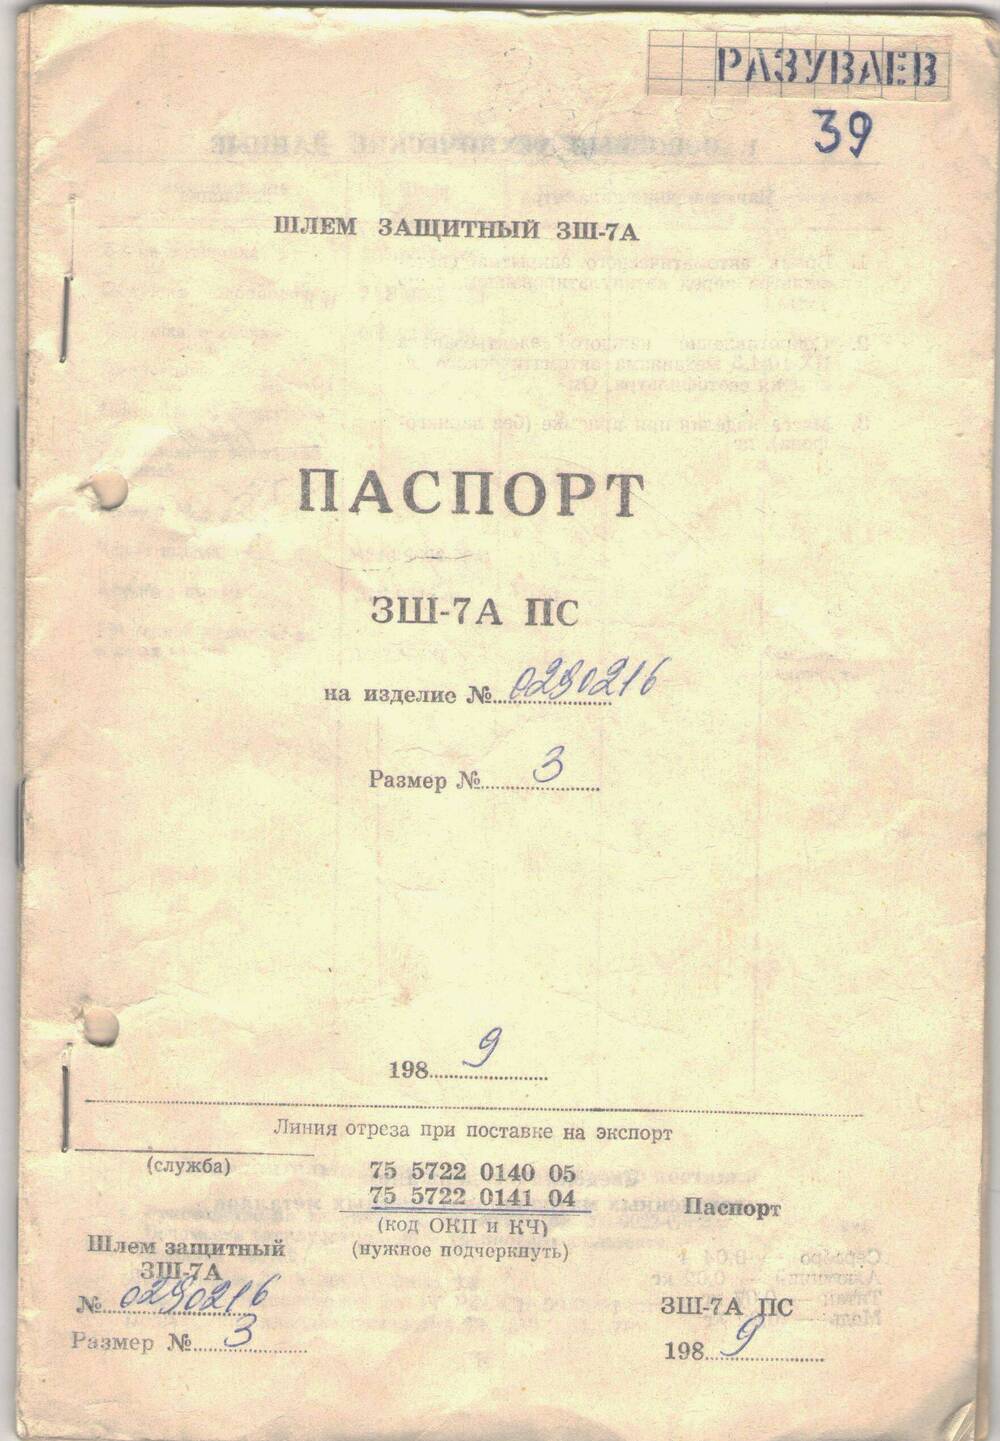 Паспорт технический на военное снаряжение (защитный шлем и  кислородную маску) летчика Разуваева Михаила Пантелеевича.